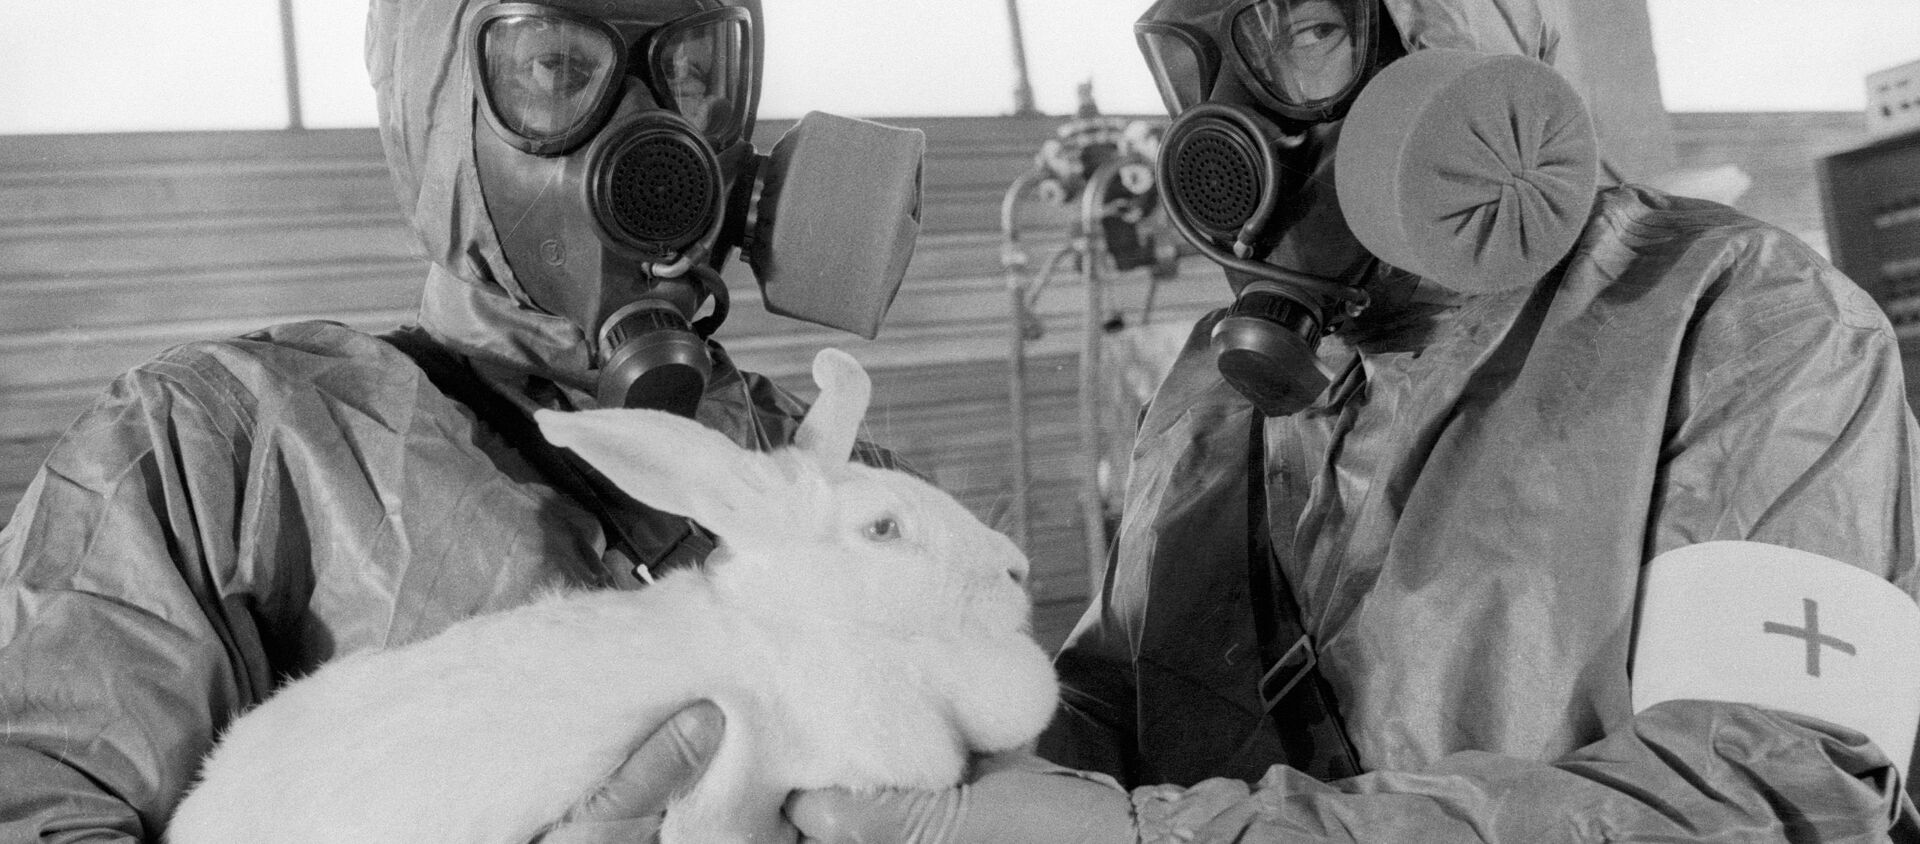 Una prueba de armas quínicas en un conejo (archivo) - Sputnik Mundo, 1920, 02.08.2020